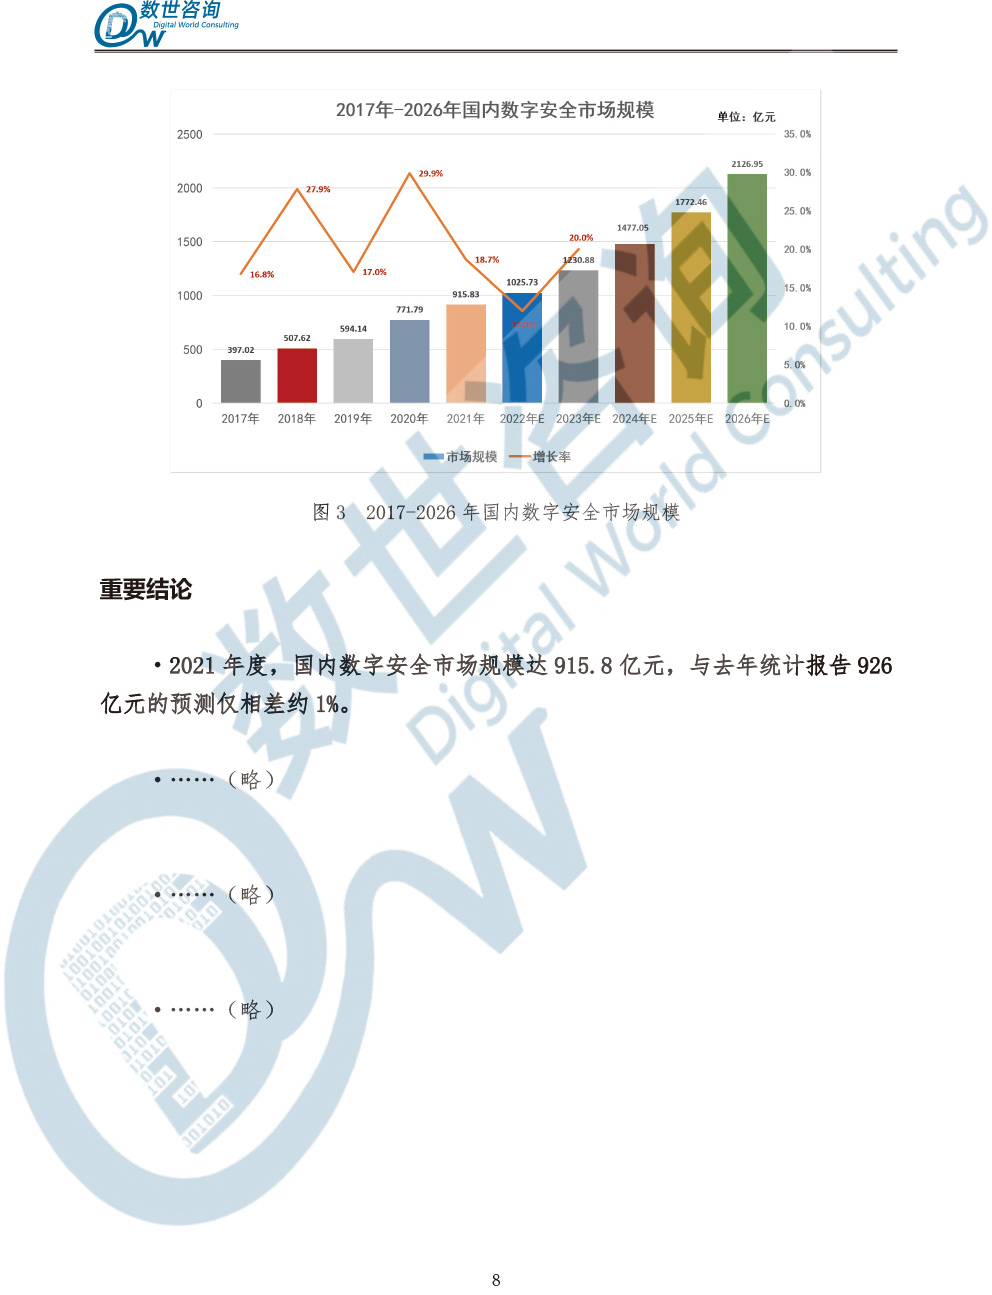 中国数字安全产业统计与分析报告(2022)图-15.jpg